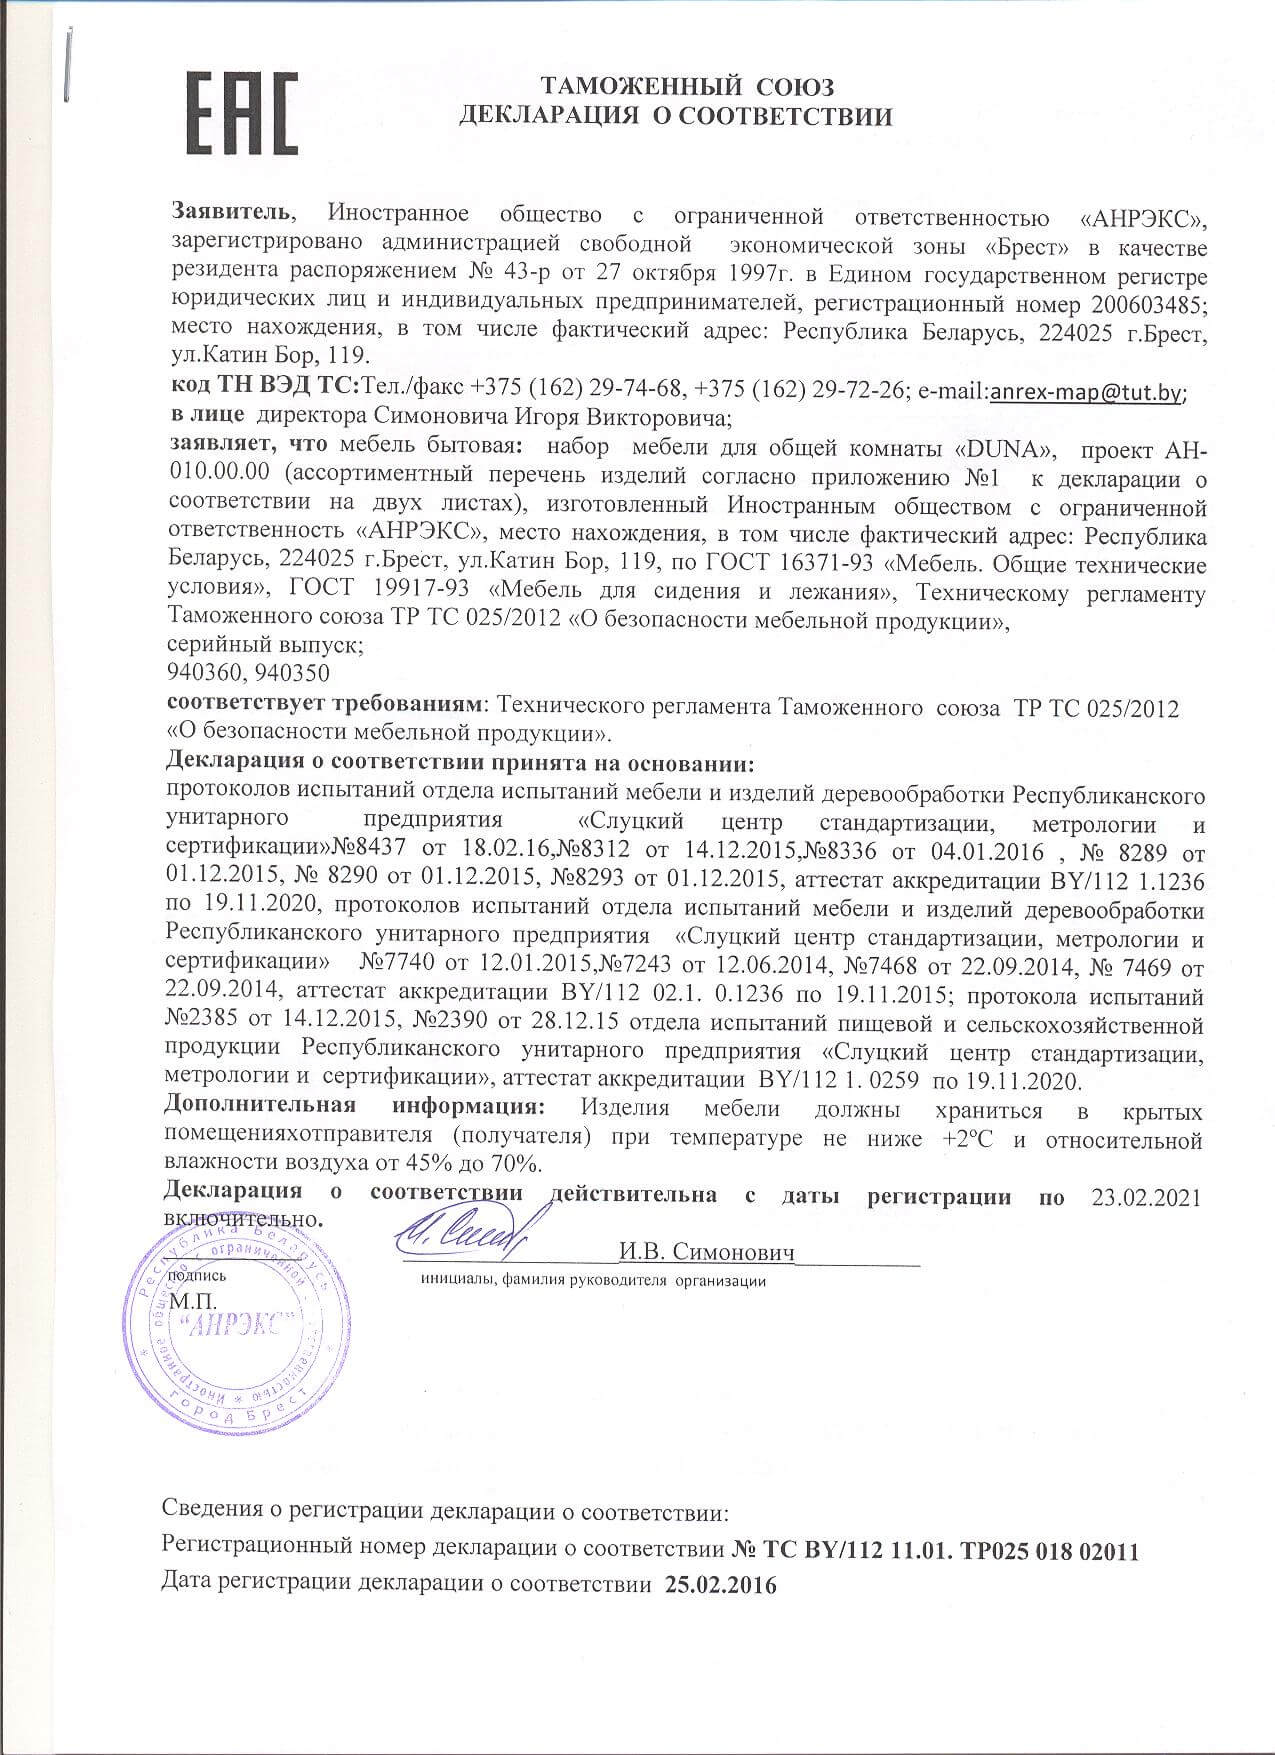 декларация тр тс 025 2012 о безопасности мебельной продукции